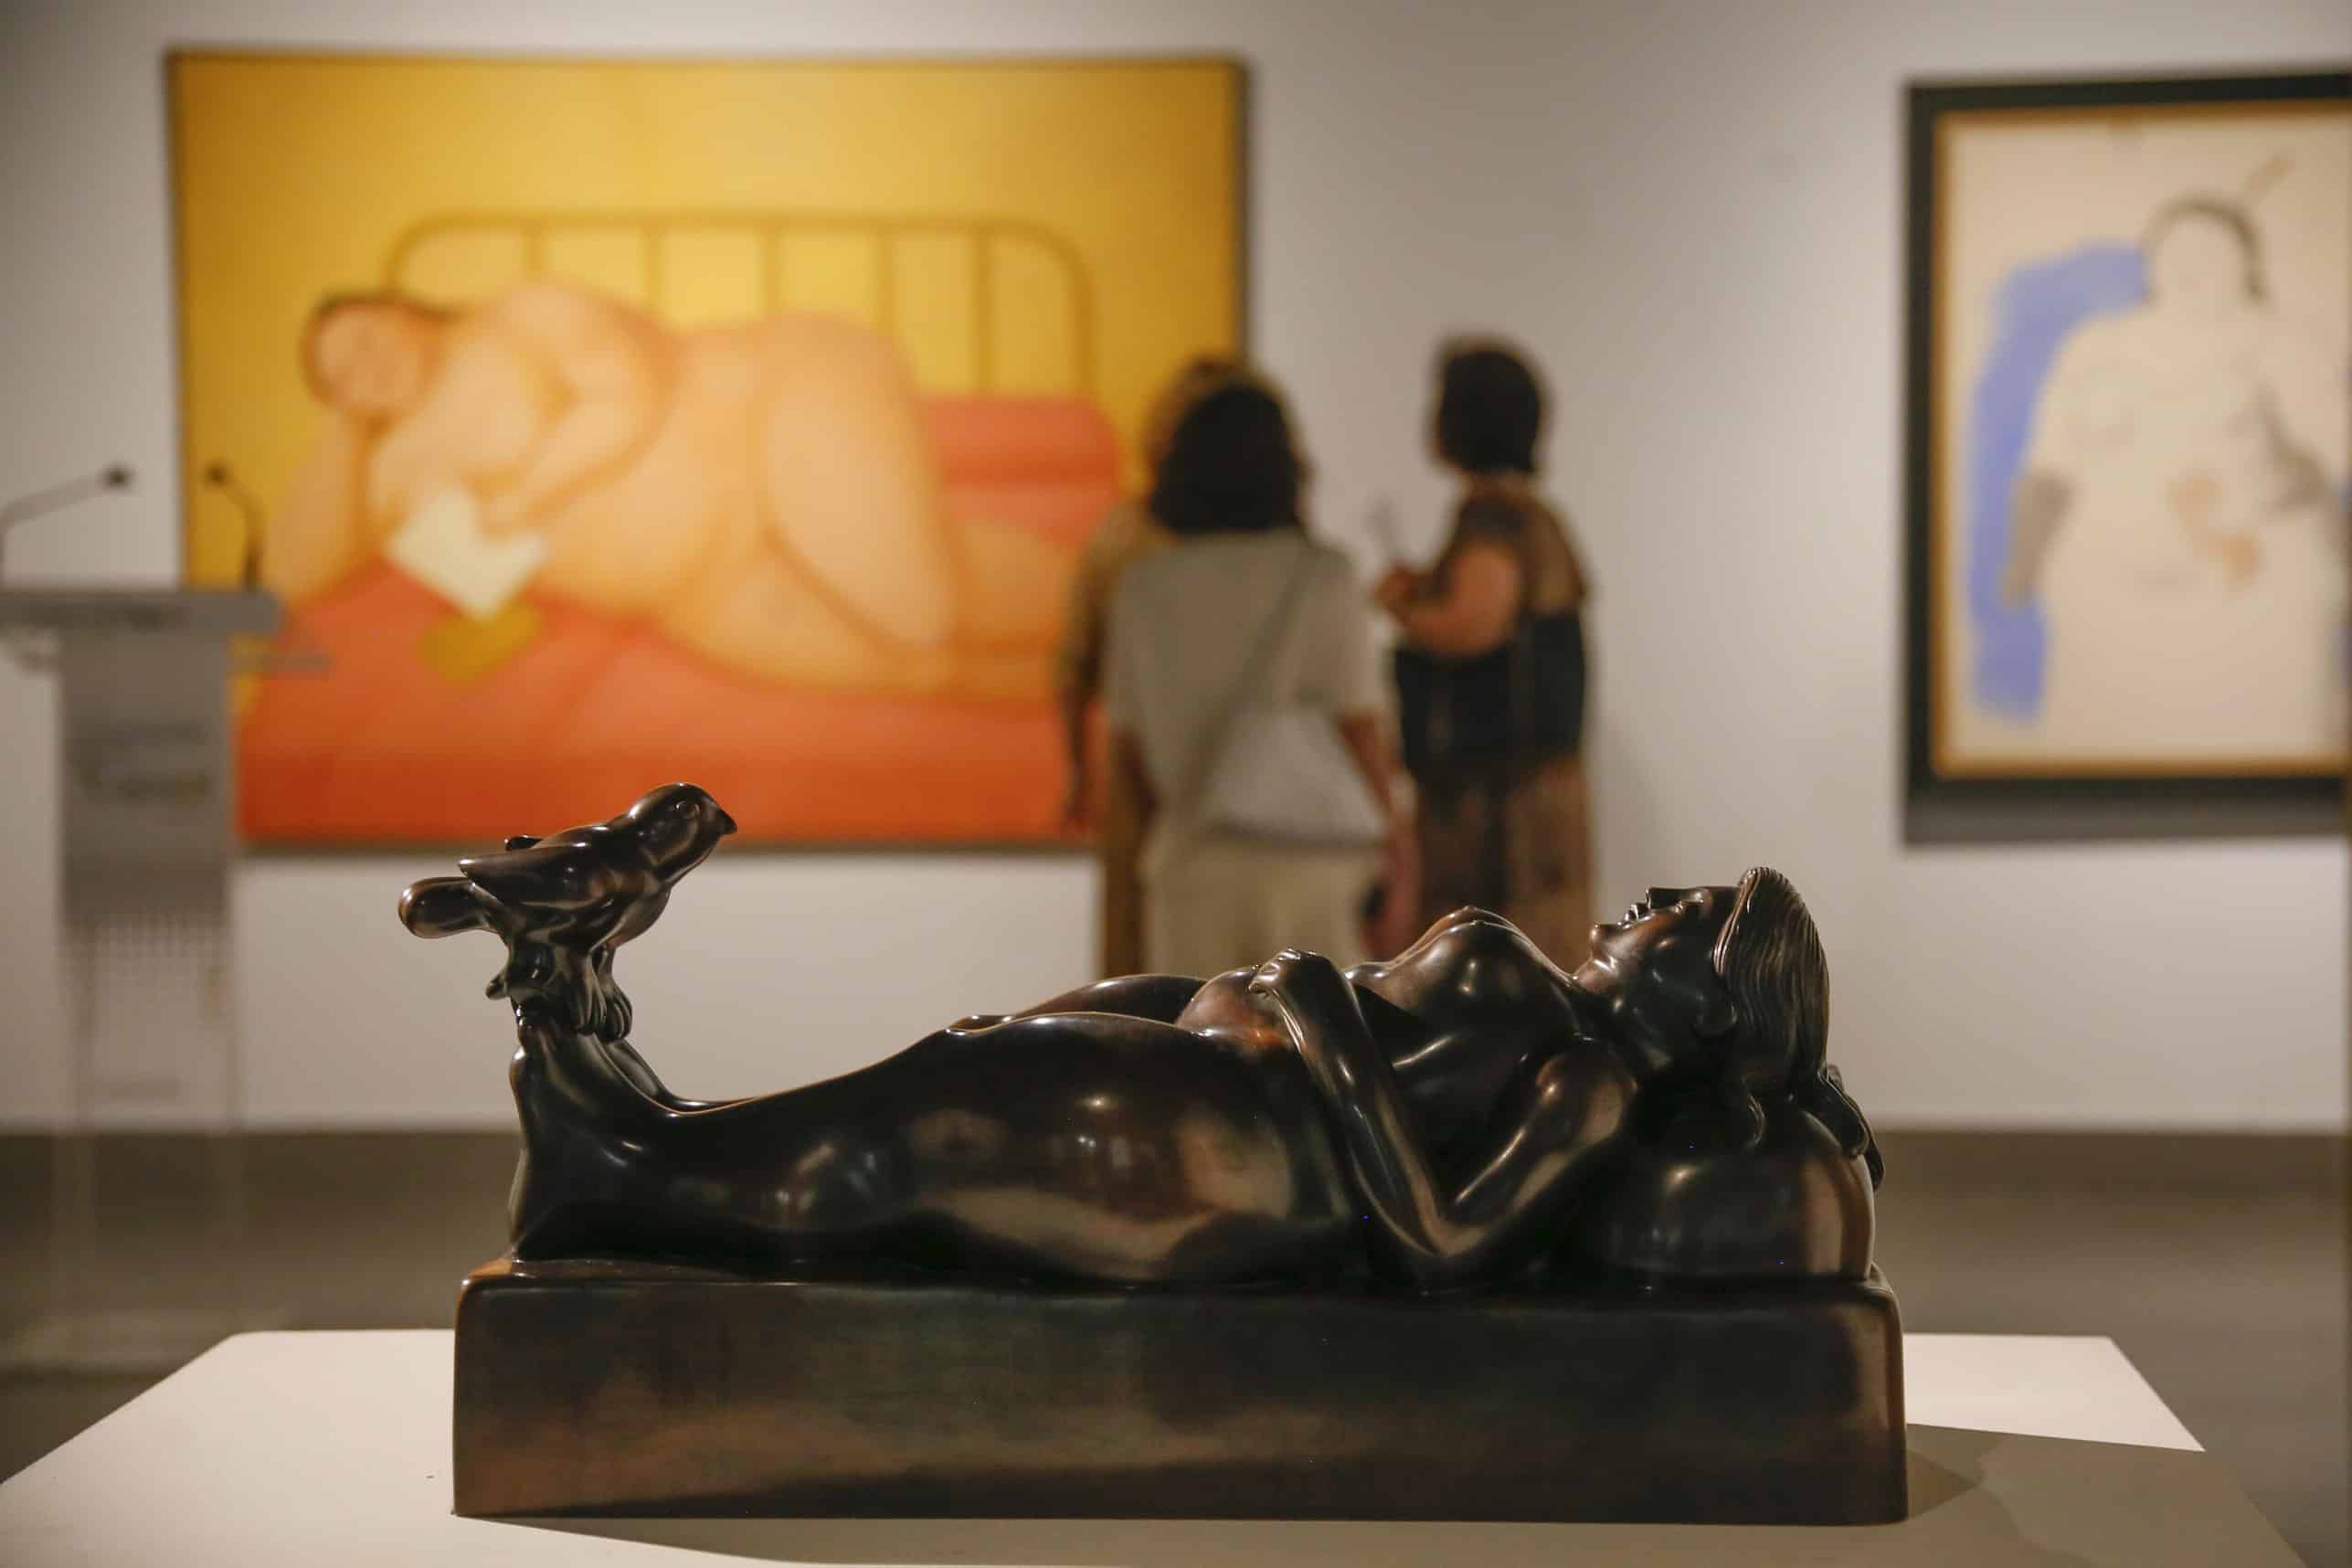 Antonio Pulido inaugura la exposición Fernando Botero. Sensualidad y melancolía en la Fundación Cajasol en Córdoba